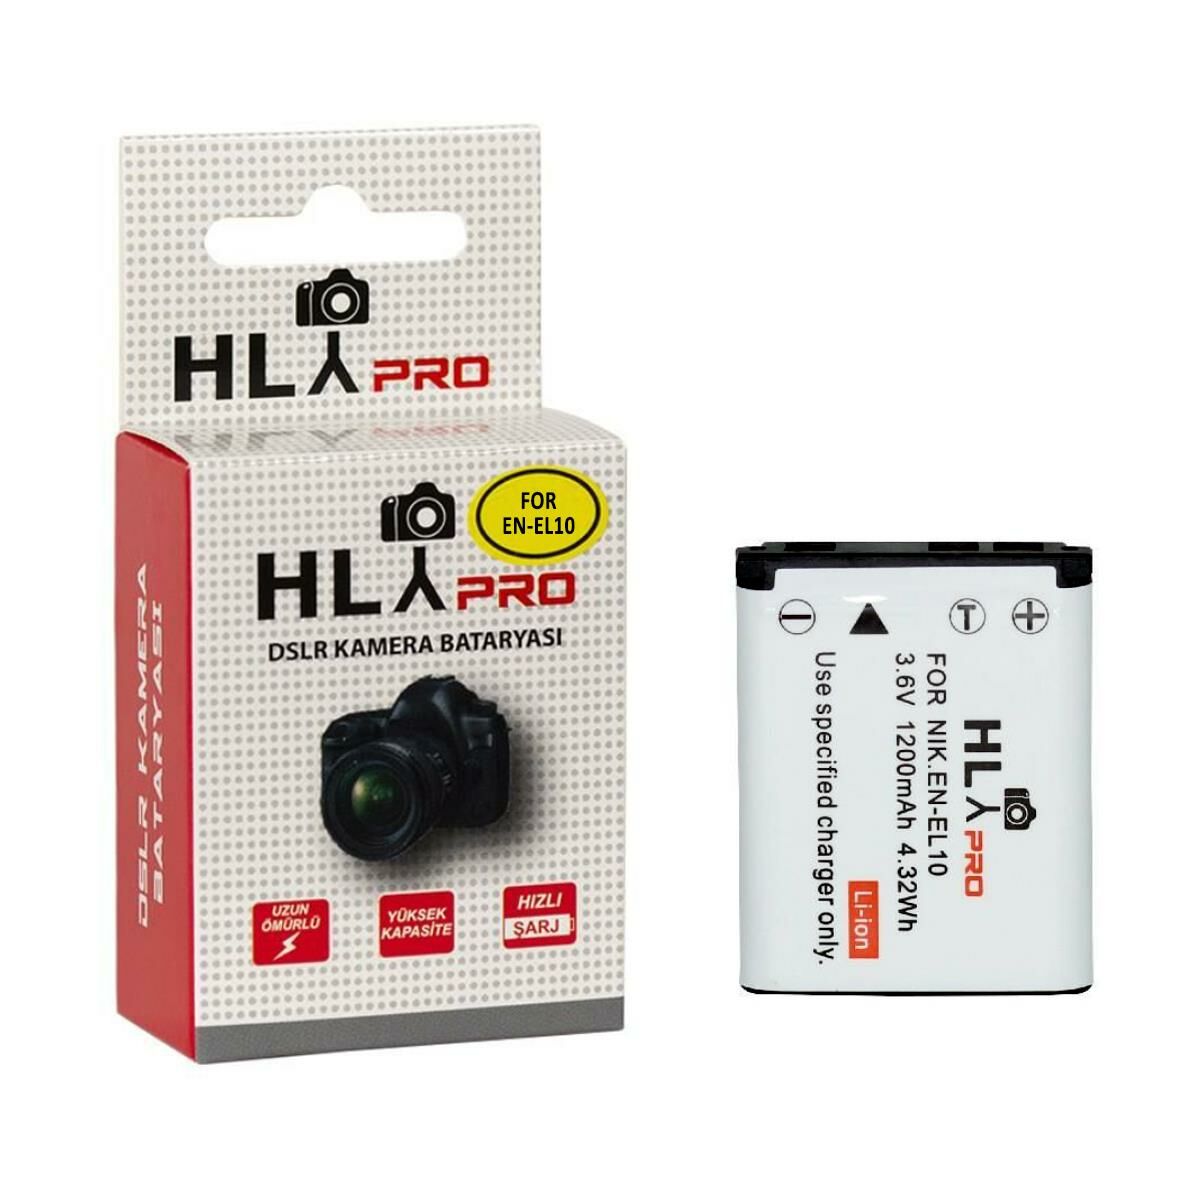 Hlypro Nikon Coolpix S500 için EN-EL10 Batarya